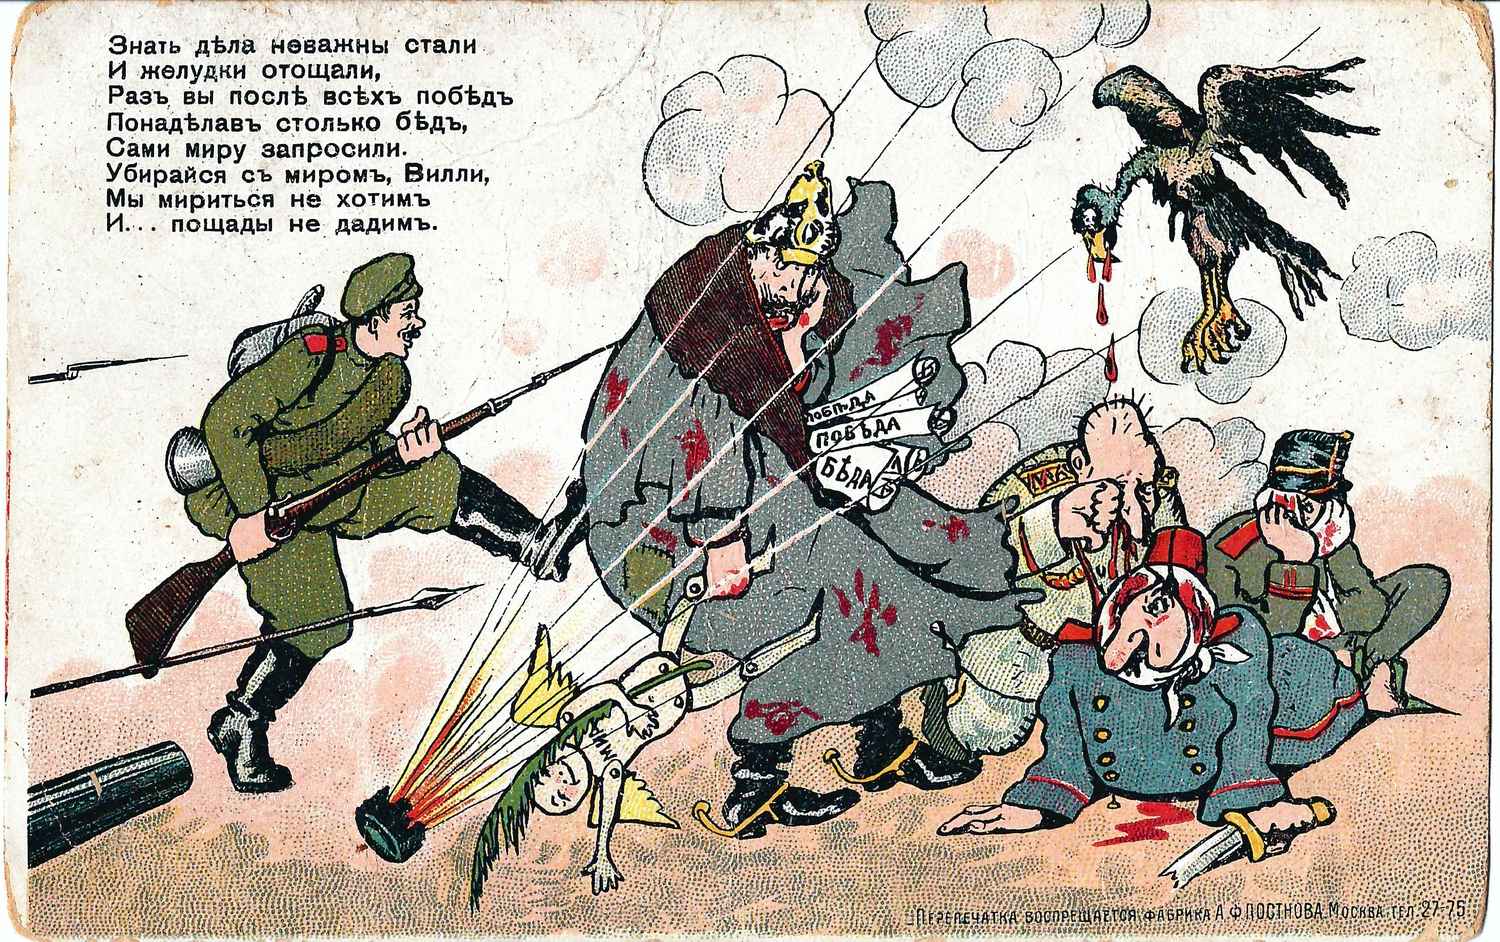 3 агитационные сатирические открытки периода Первой мировой войны. Россия, 1910-е годы.